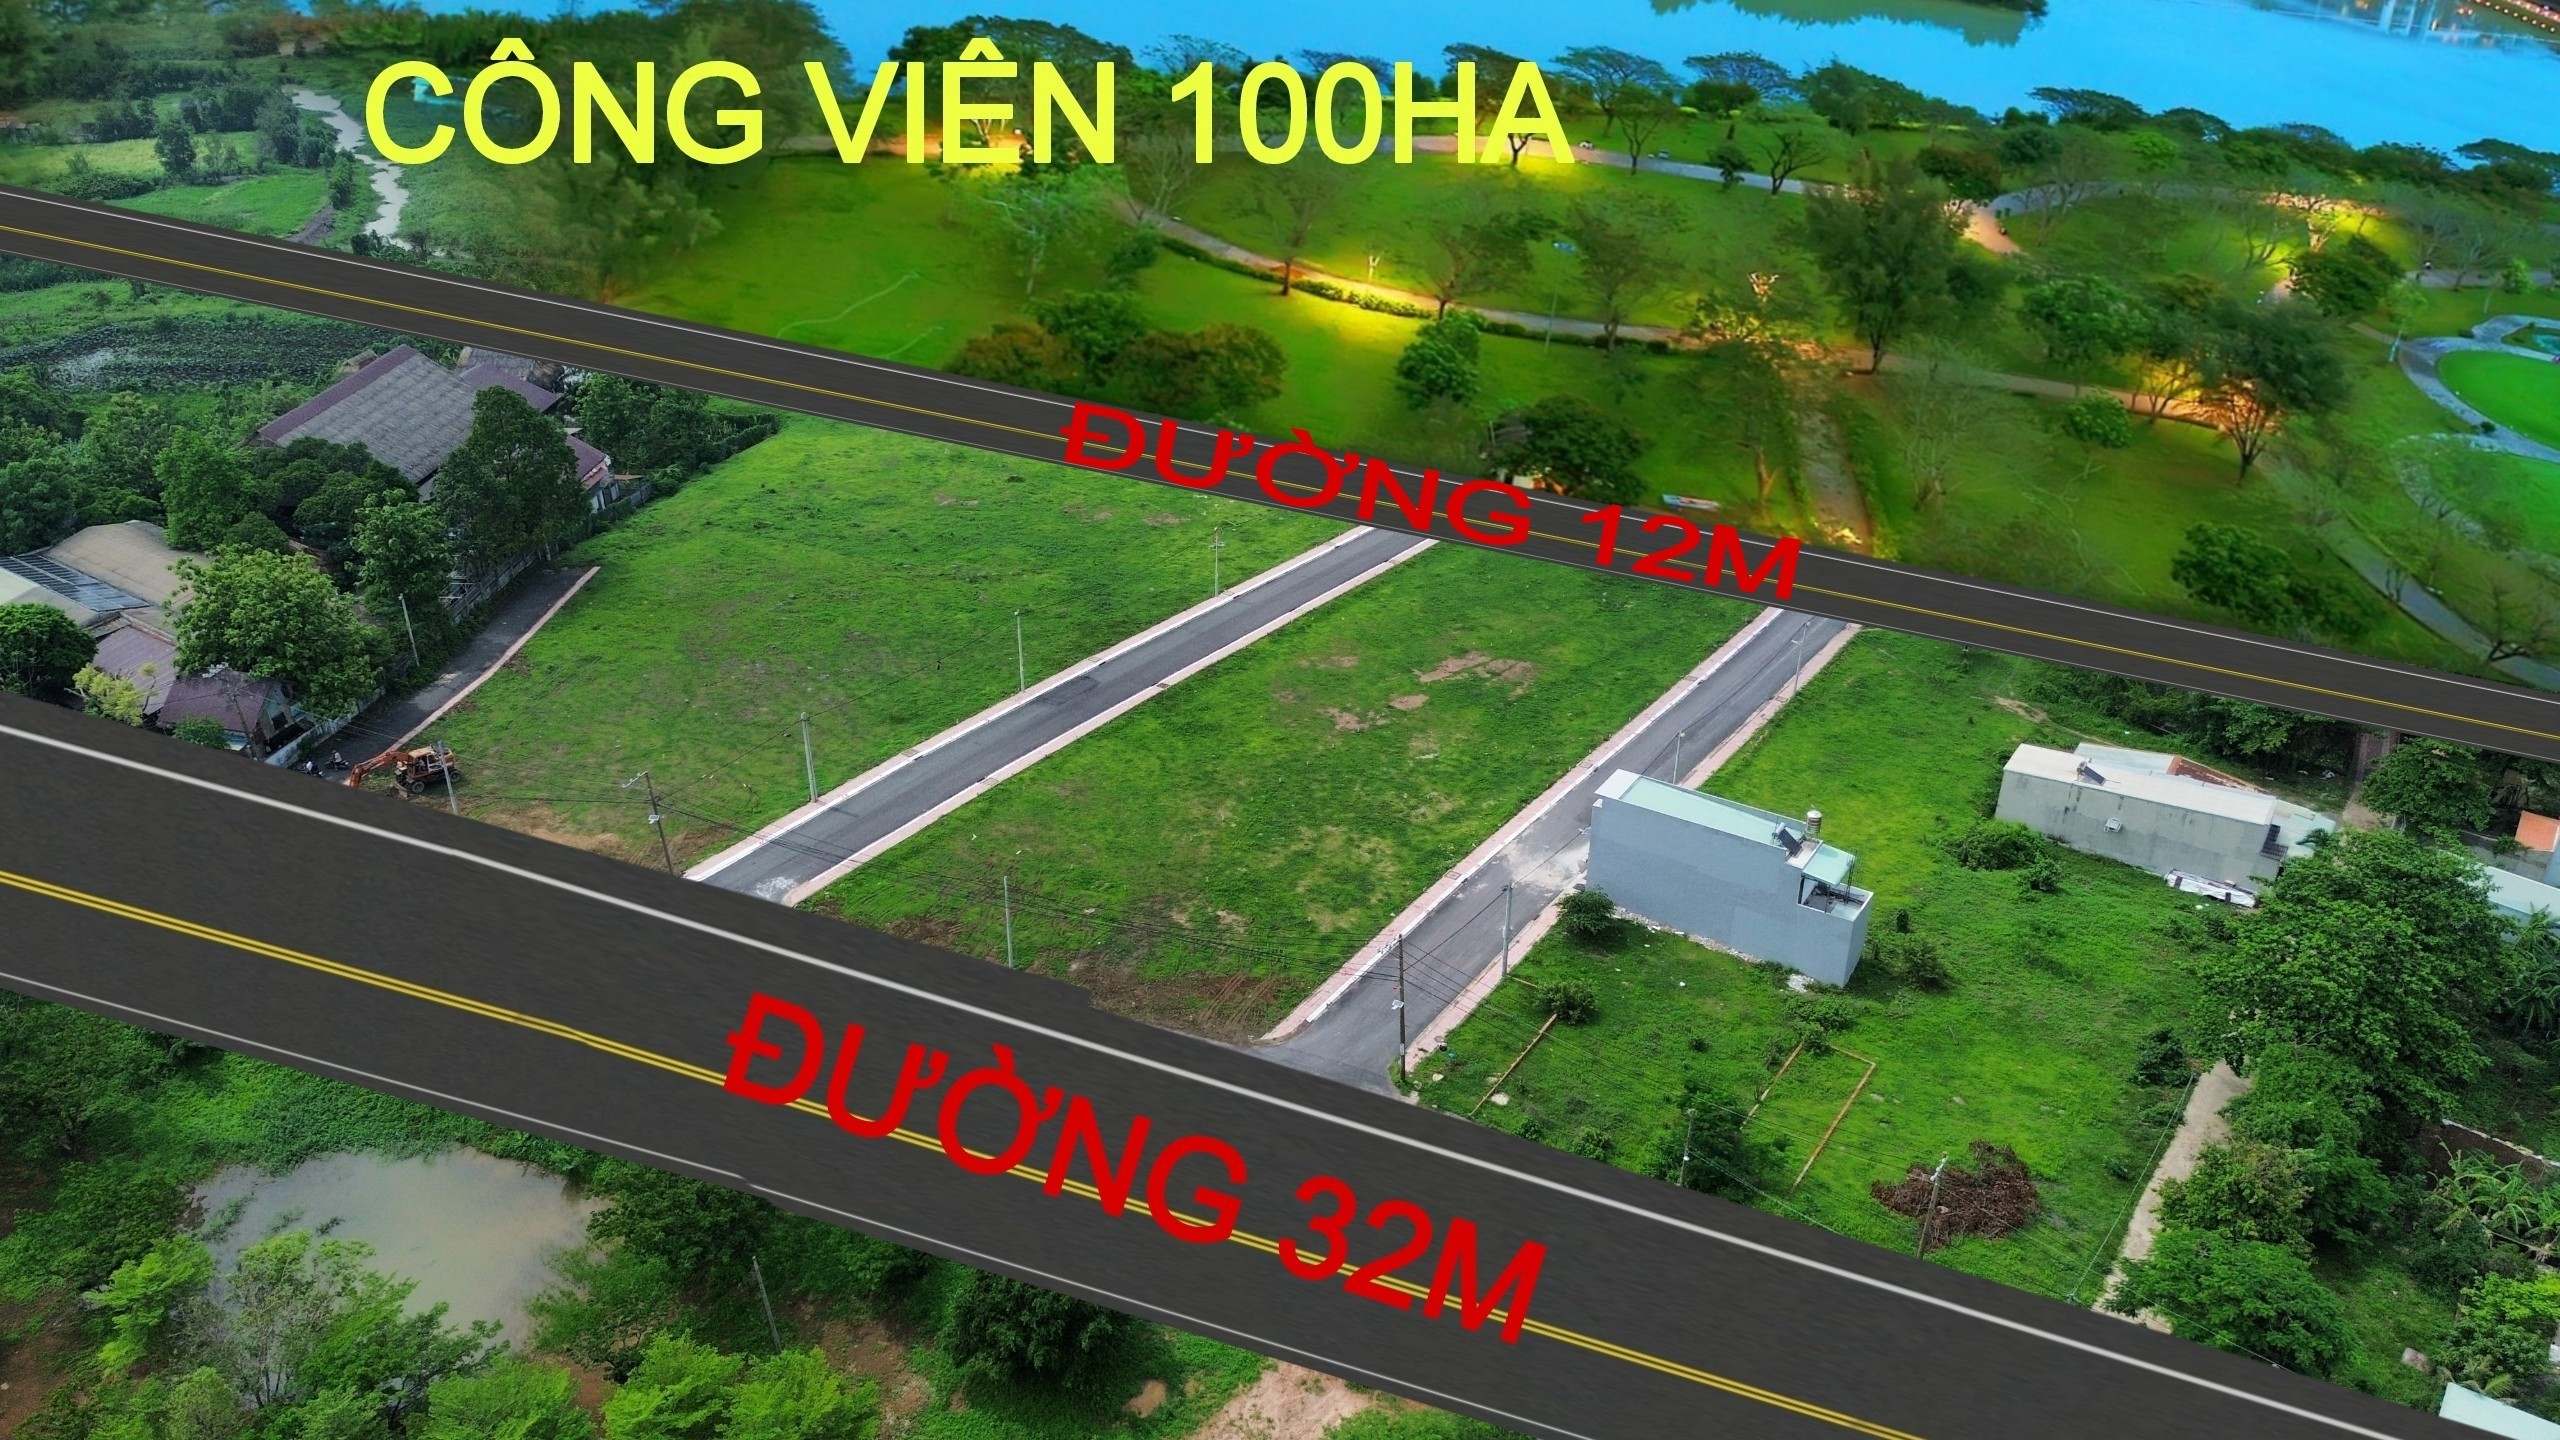 Bán gấp lô đất nền ngay công viên 100ha view hồ trung tâm thành phố Biên Hòa 7